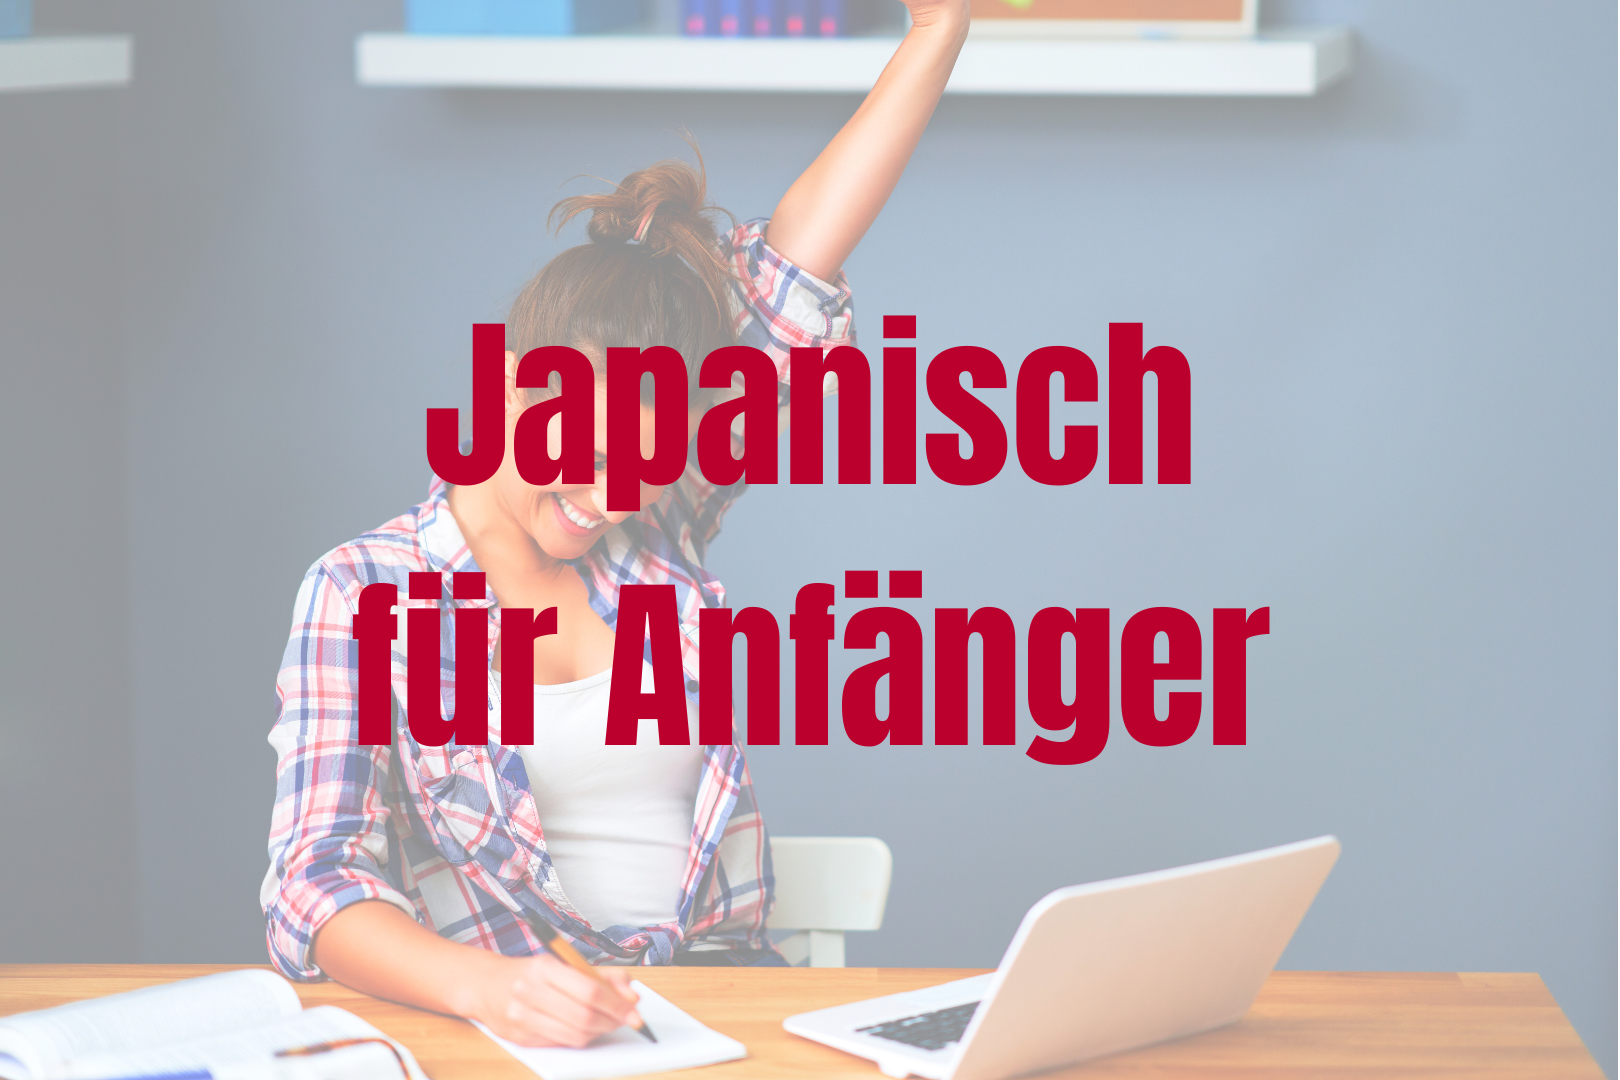 Japanisch für Anfänger. Frau reißt Arm in die Höhe beim Lernen.